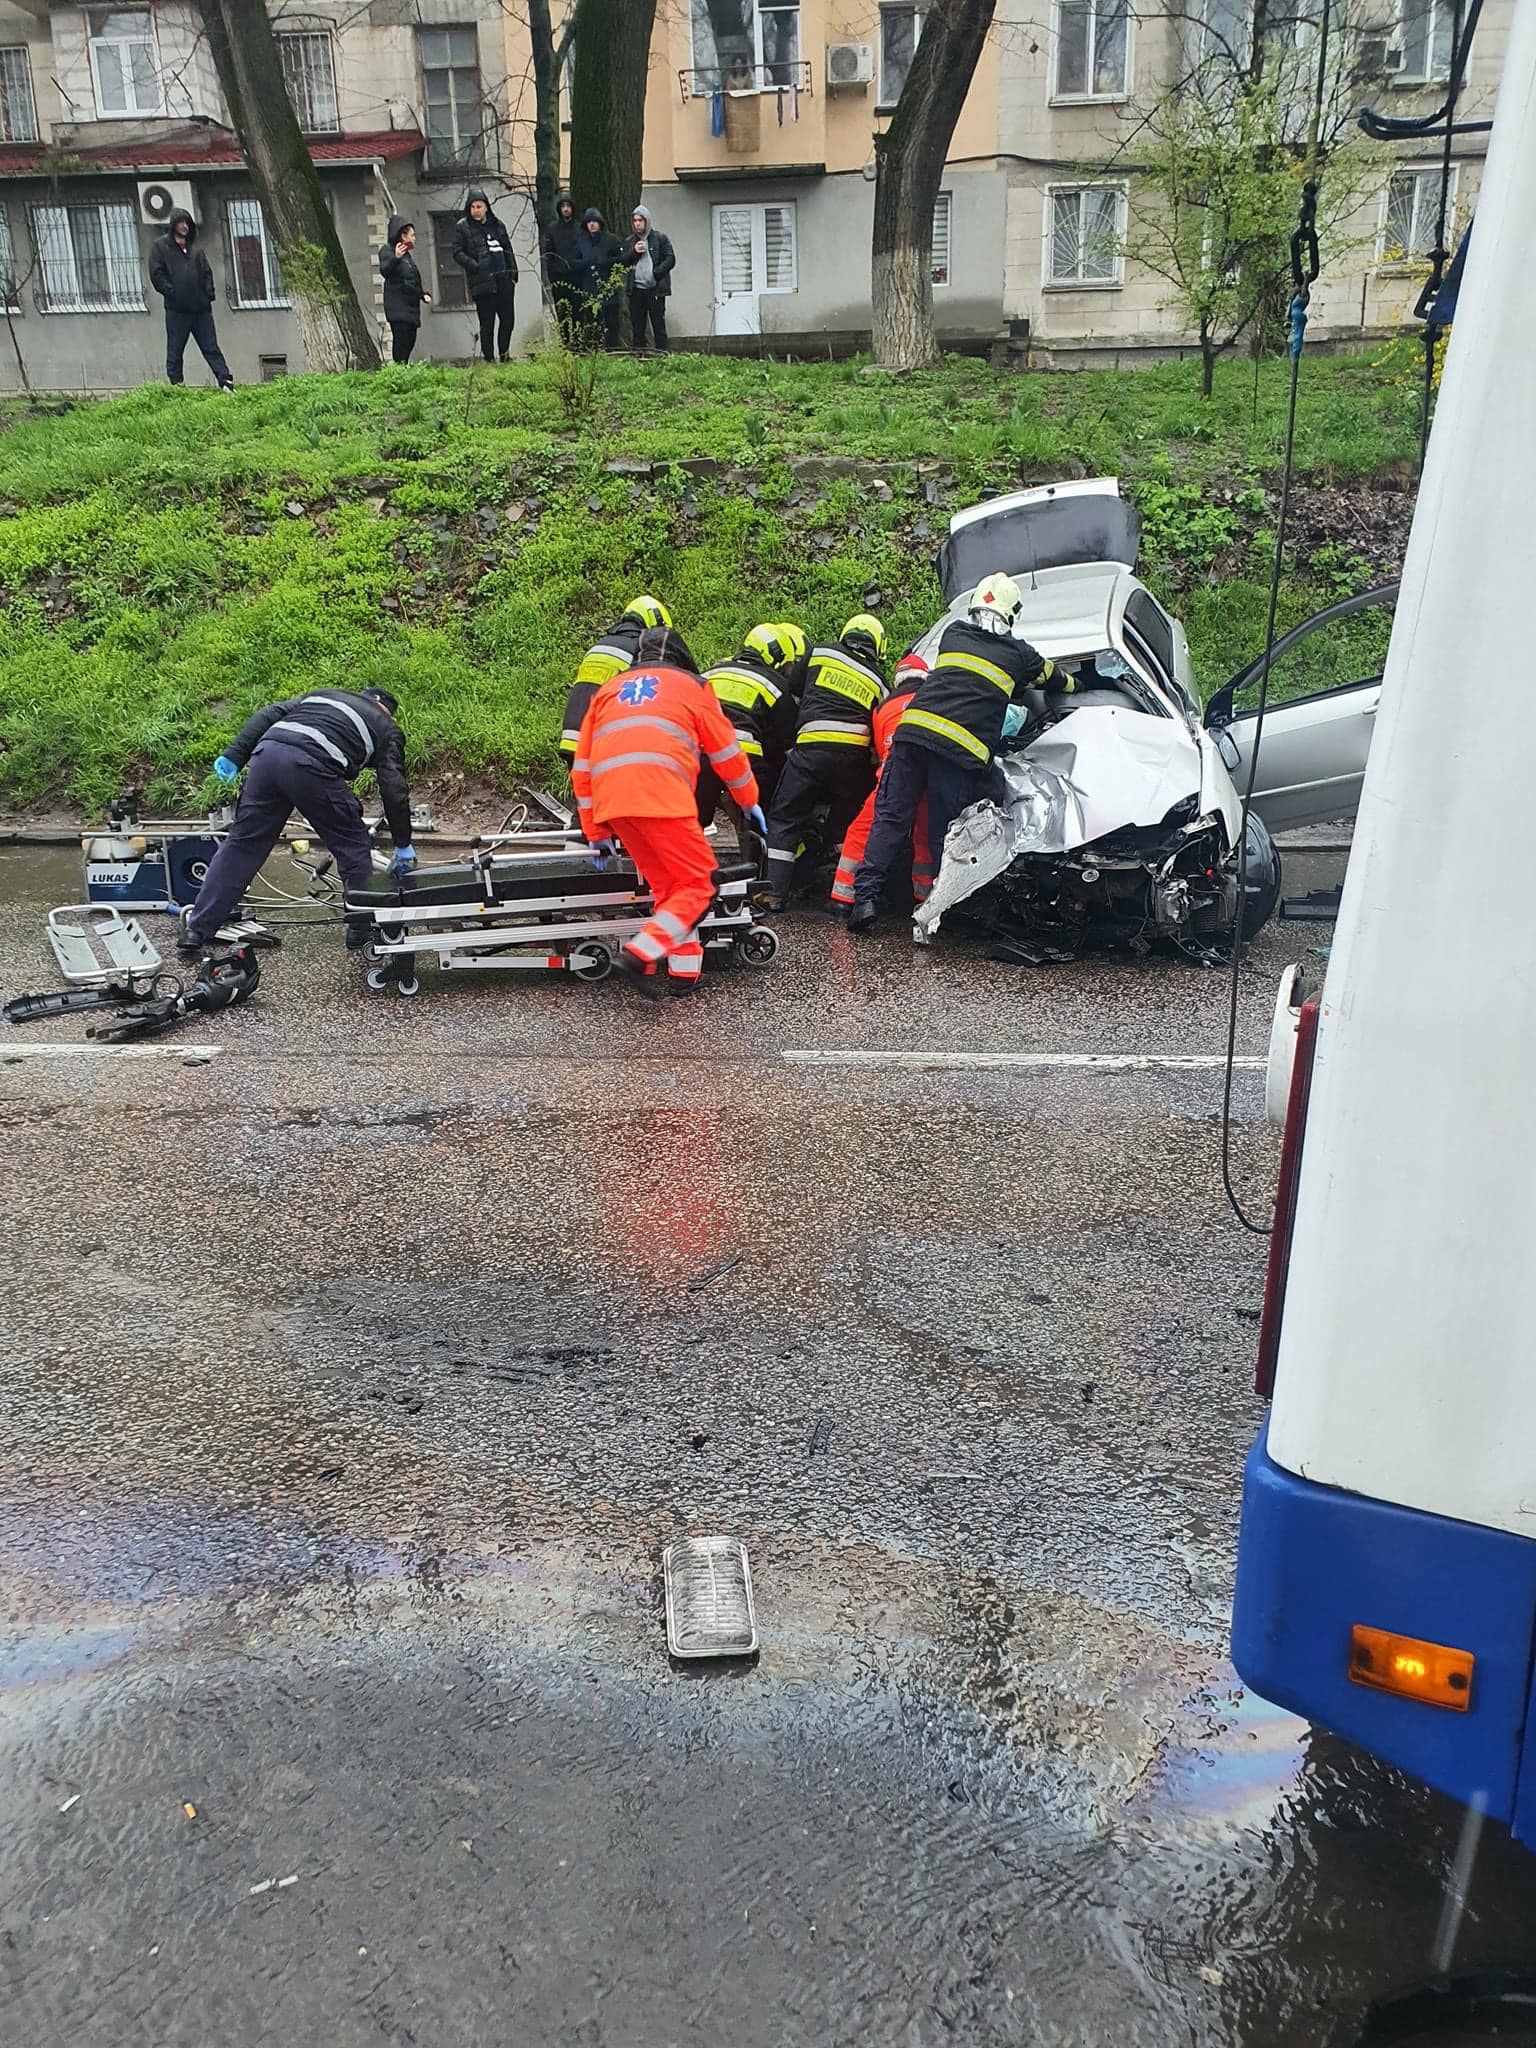 (ФОТО) В Кишиневе автомобиль врезался в троллейбус. Есть пострадавшие